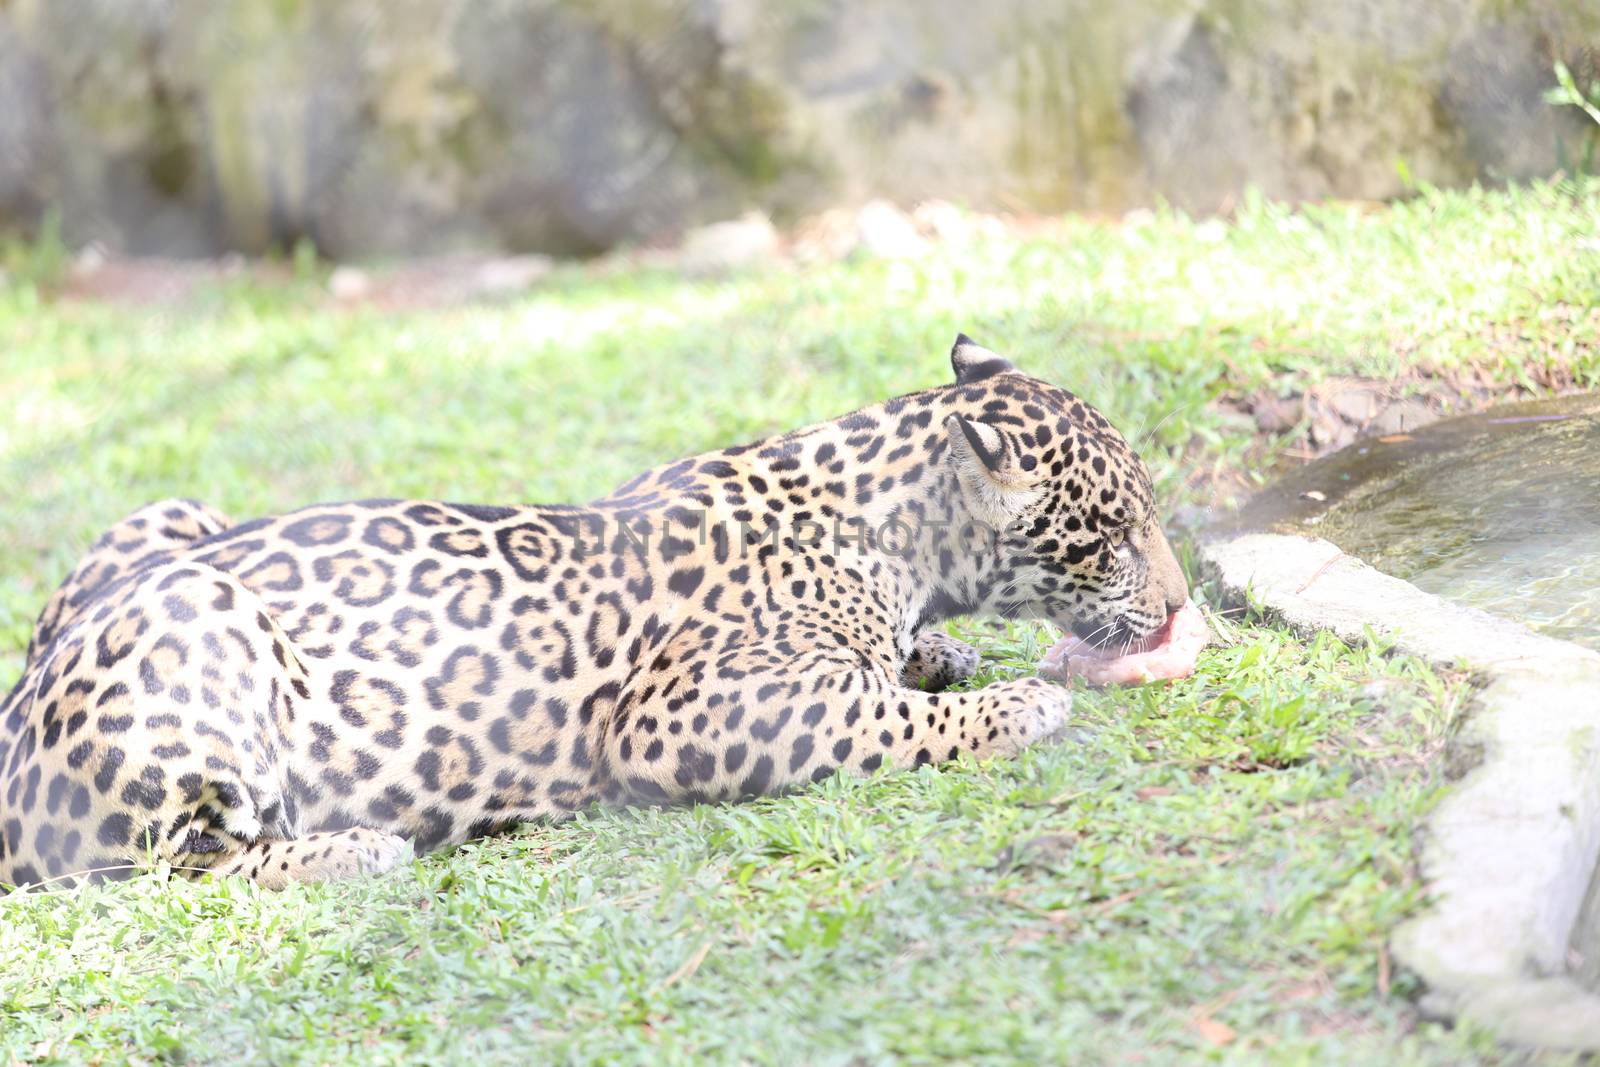 Jaguar eating his pray